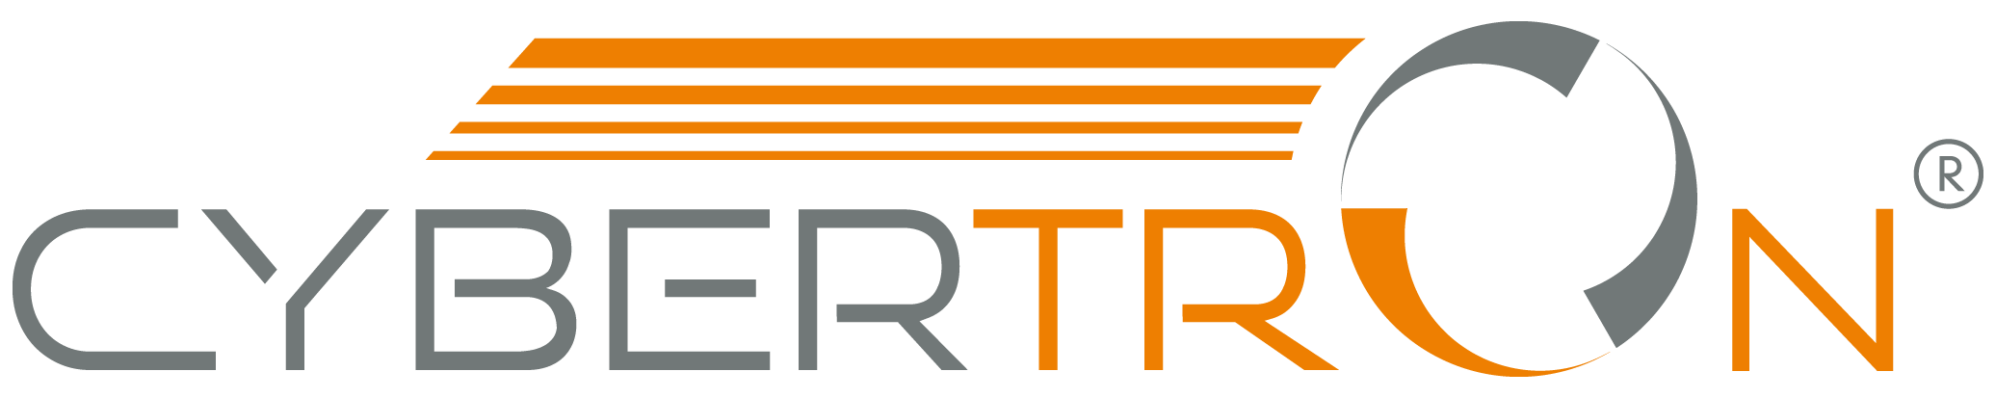 CYBERTRON GmbH logo.